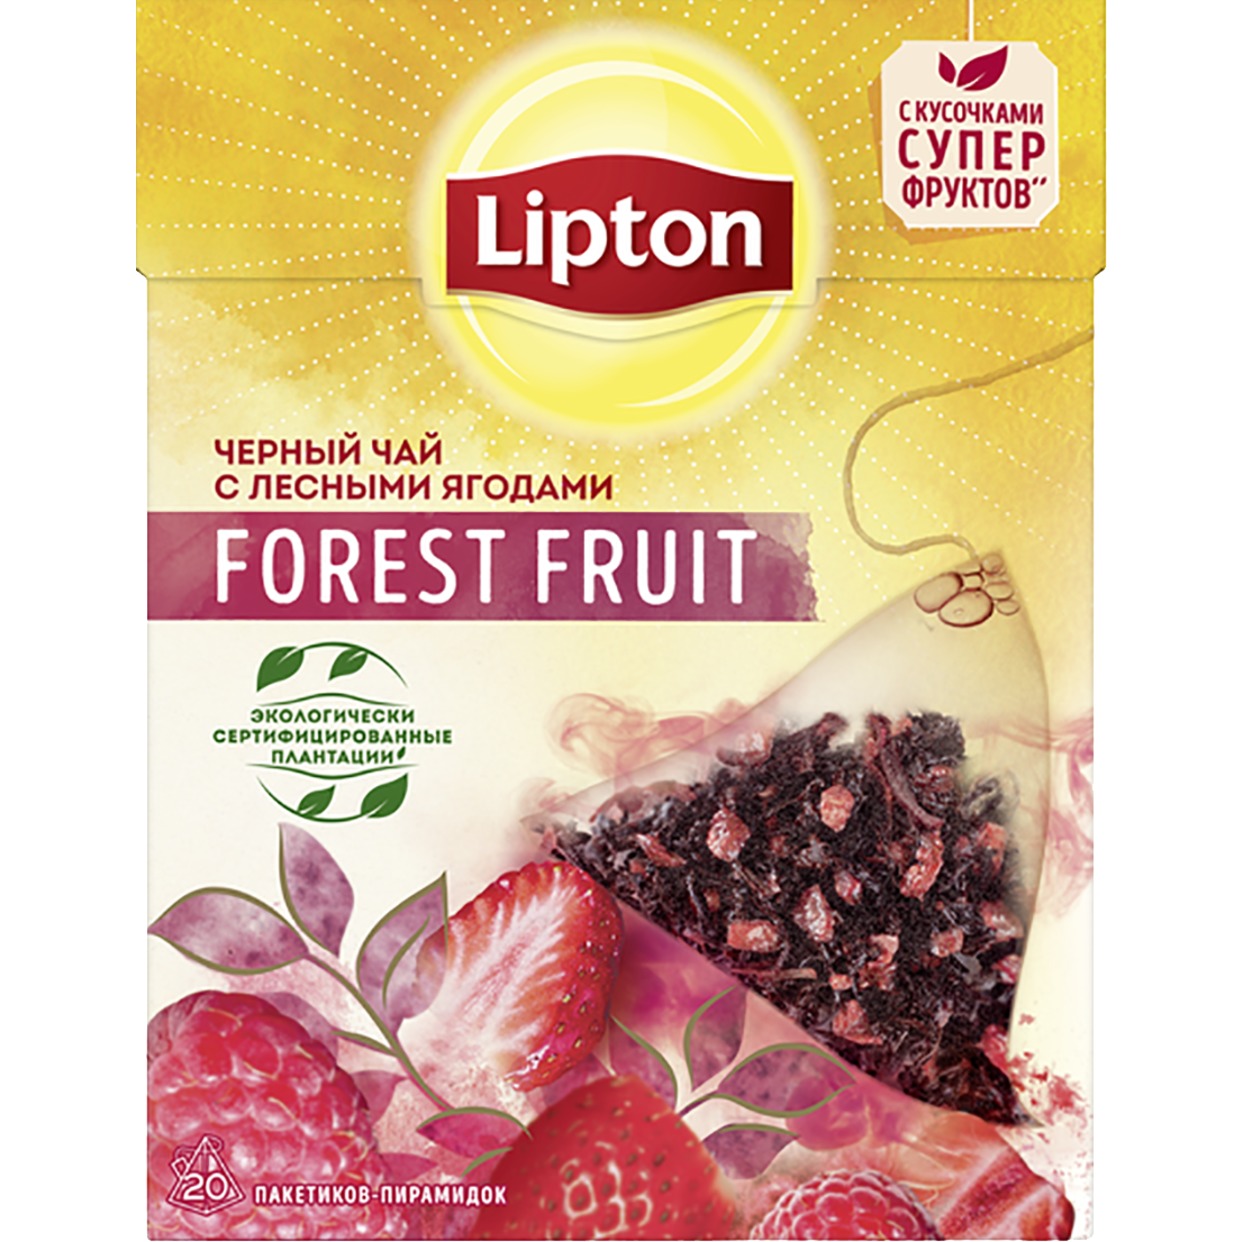 LIPTON Чай FOREST FRUIT TEA 20х1,7г по акции в Пятерочке